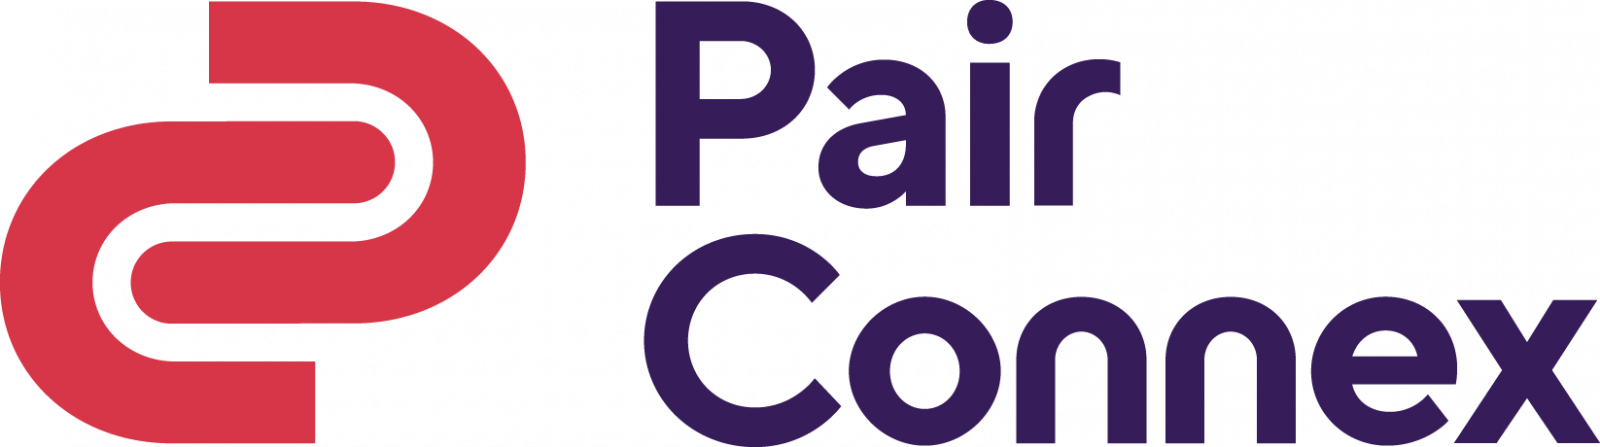 PairConnex